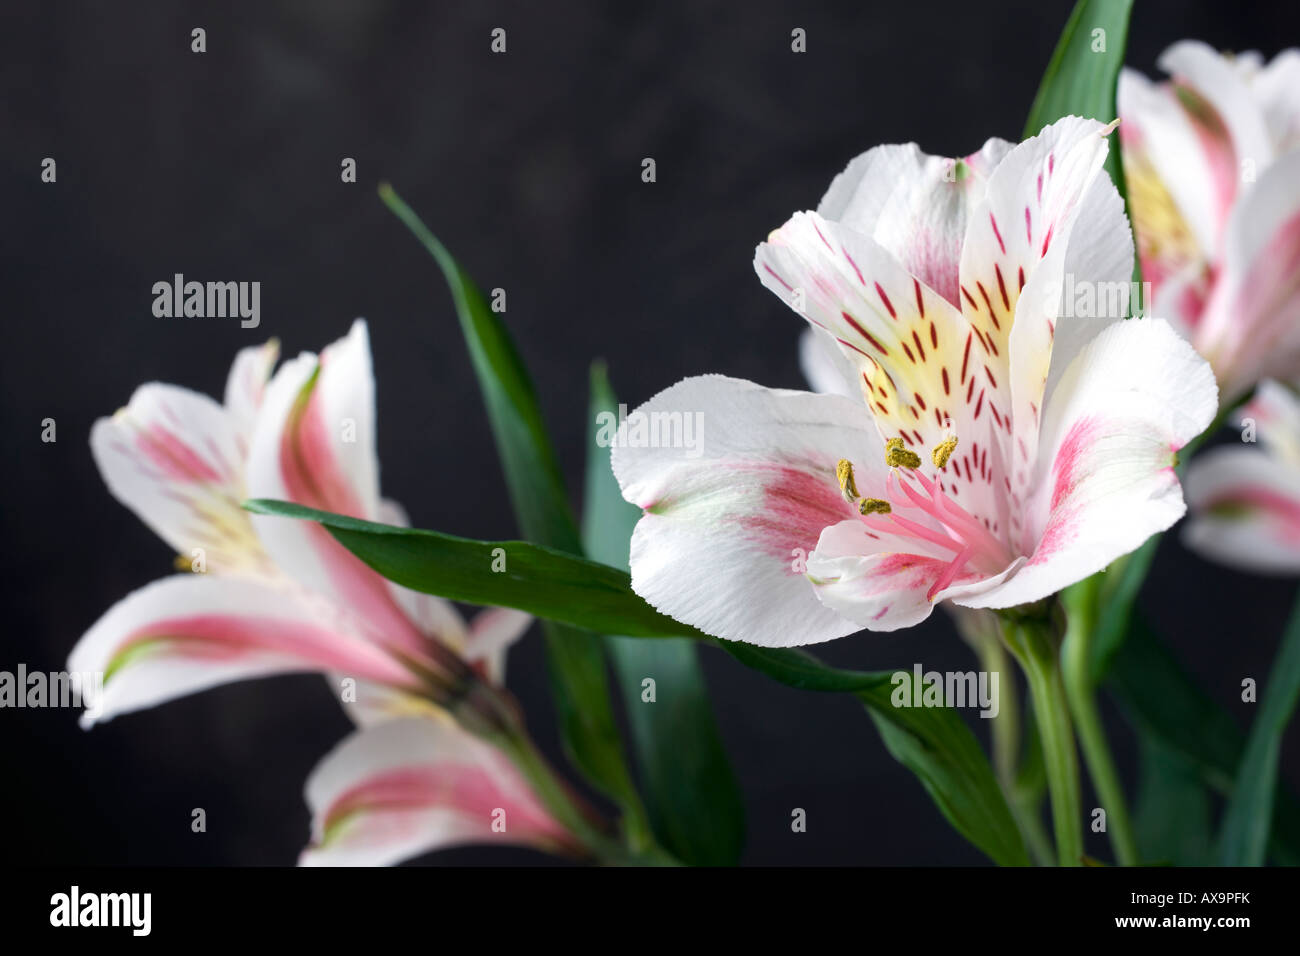 Ein weiß, rosa und gelbe Lilie, Alstroemeria, zeigt Pollen auf seine Stiele, auch bekannt als die Lilie der Inkas. Stockfoto